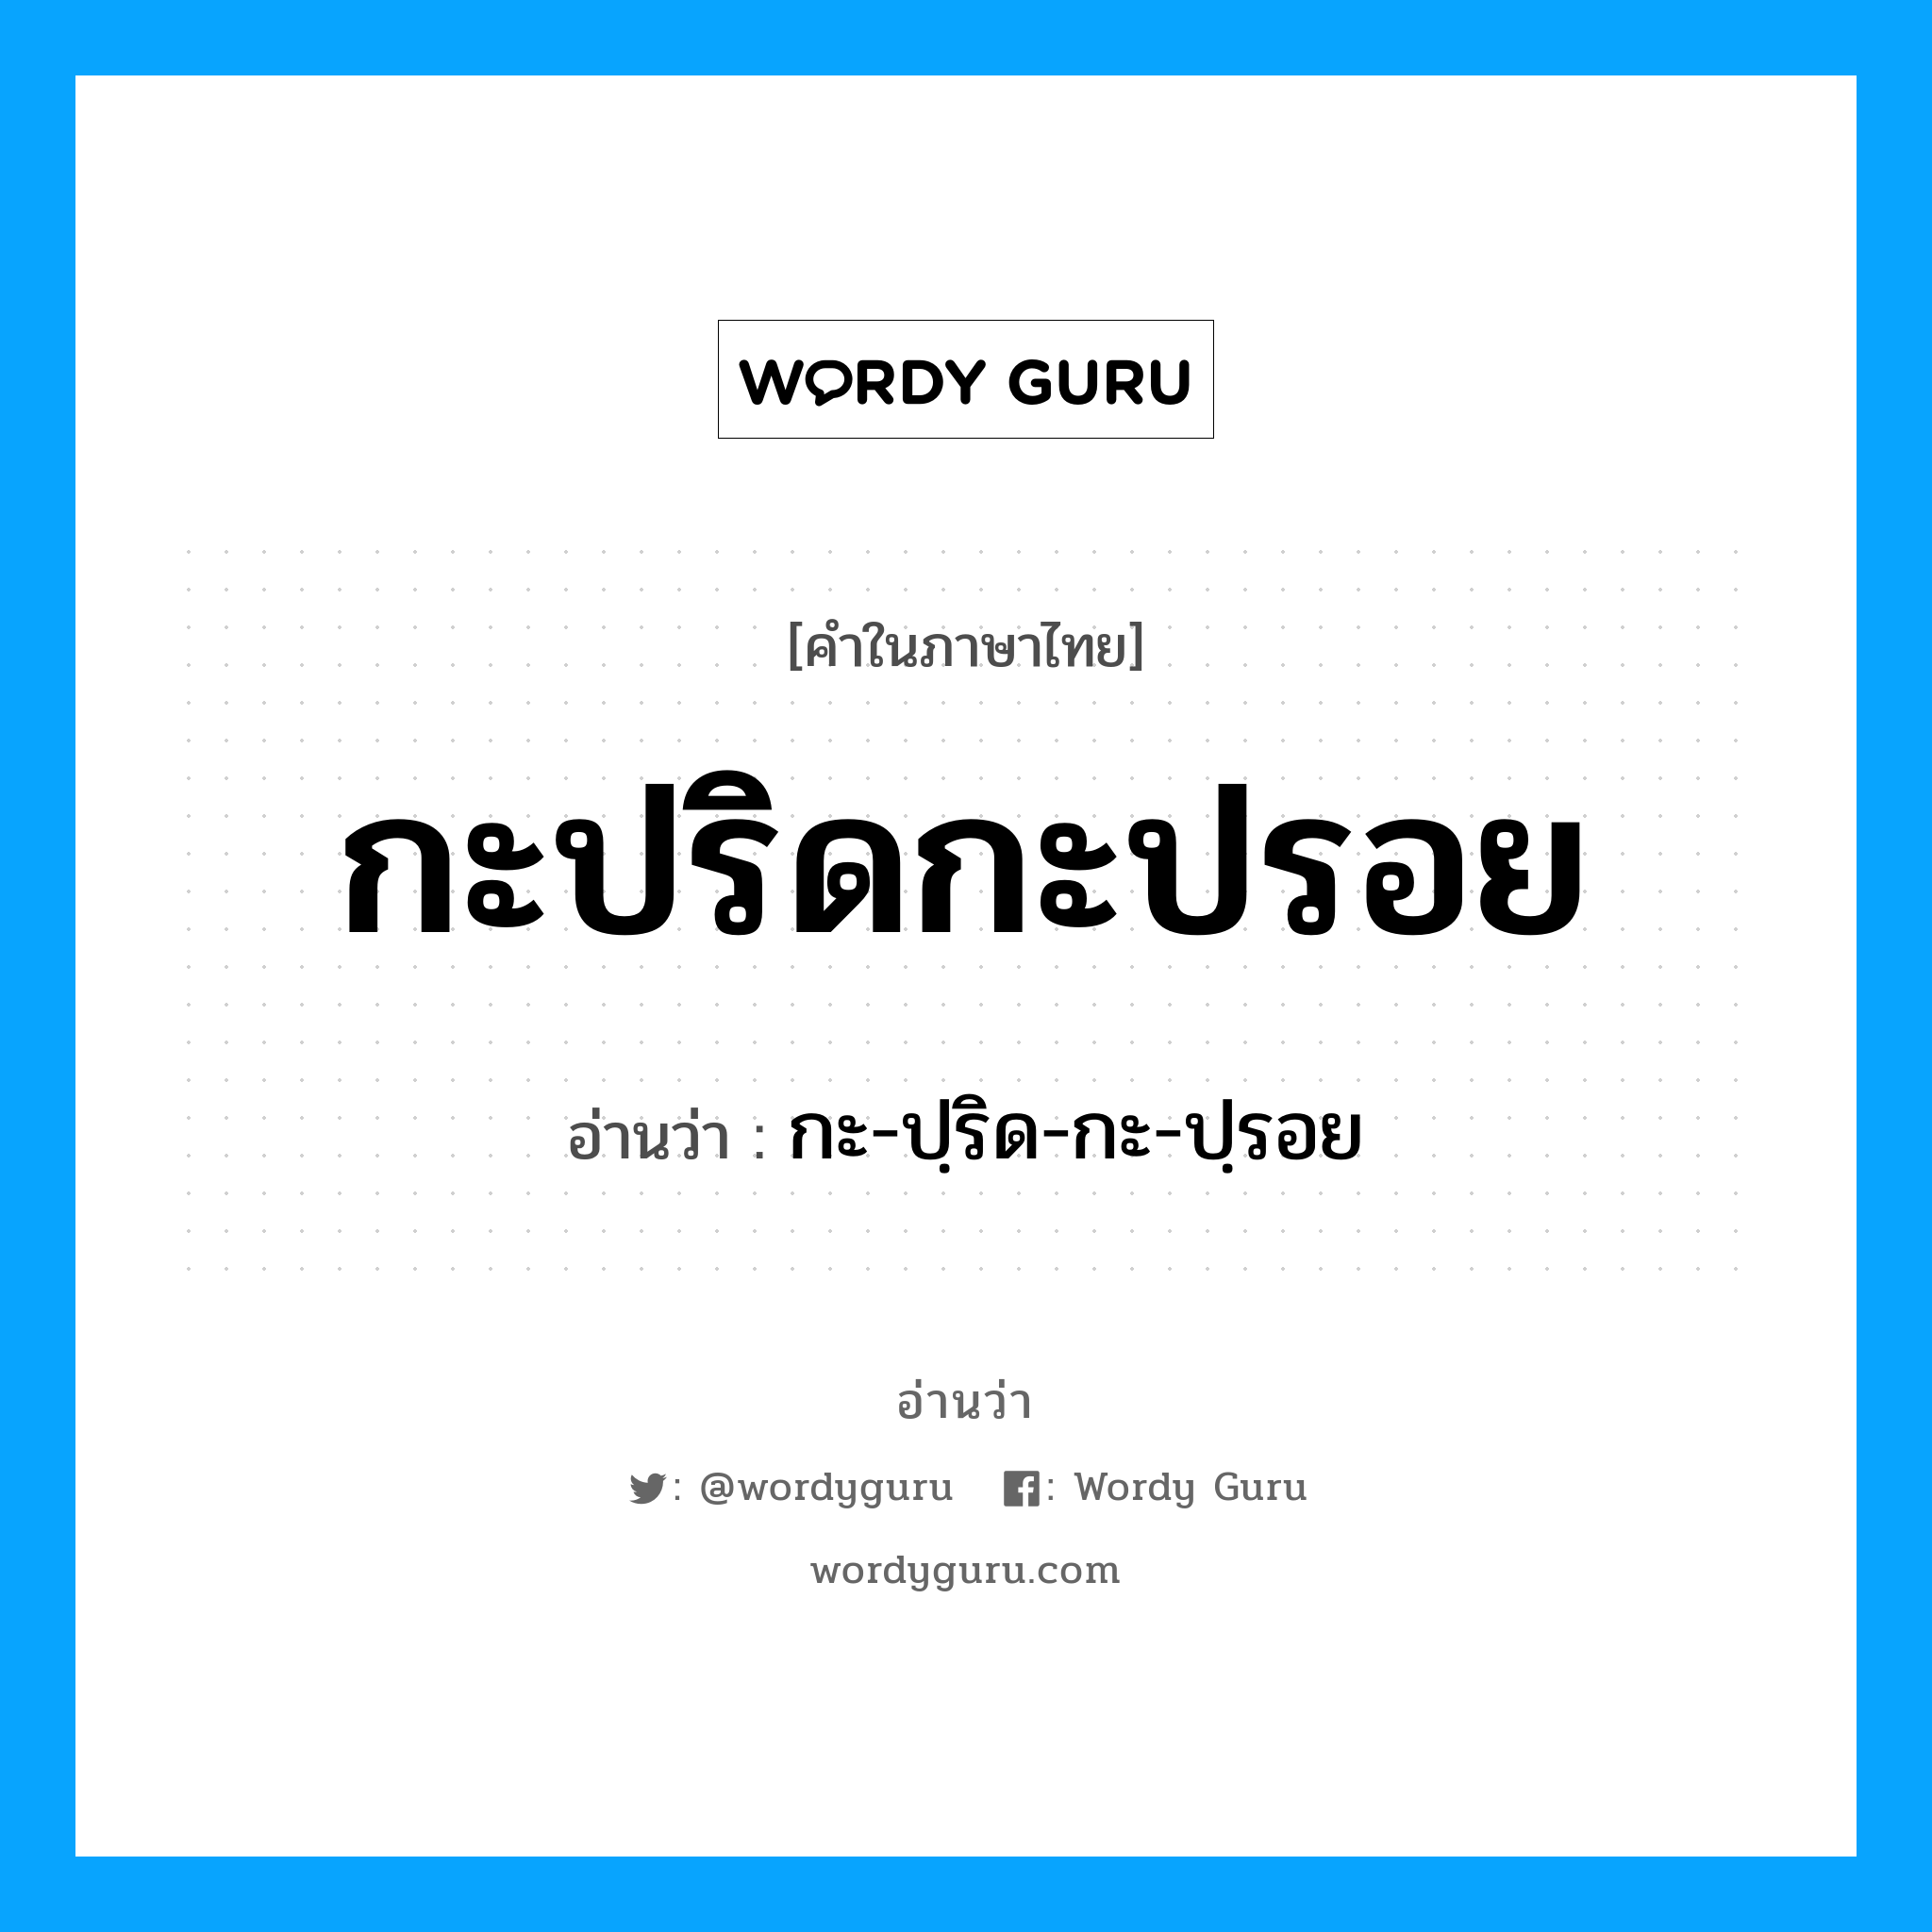 กะ-ปฺริด-กะ-ปฺรอย เป็นคำอ่านของคำไหน?, คำในภาษาไทย กะ-ปฺริด-กะ-ปฺรอย อ่านว่า กะปริดกะปรอย